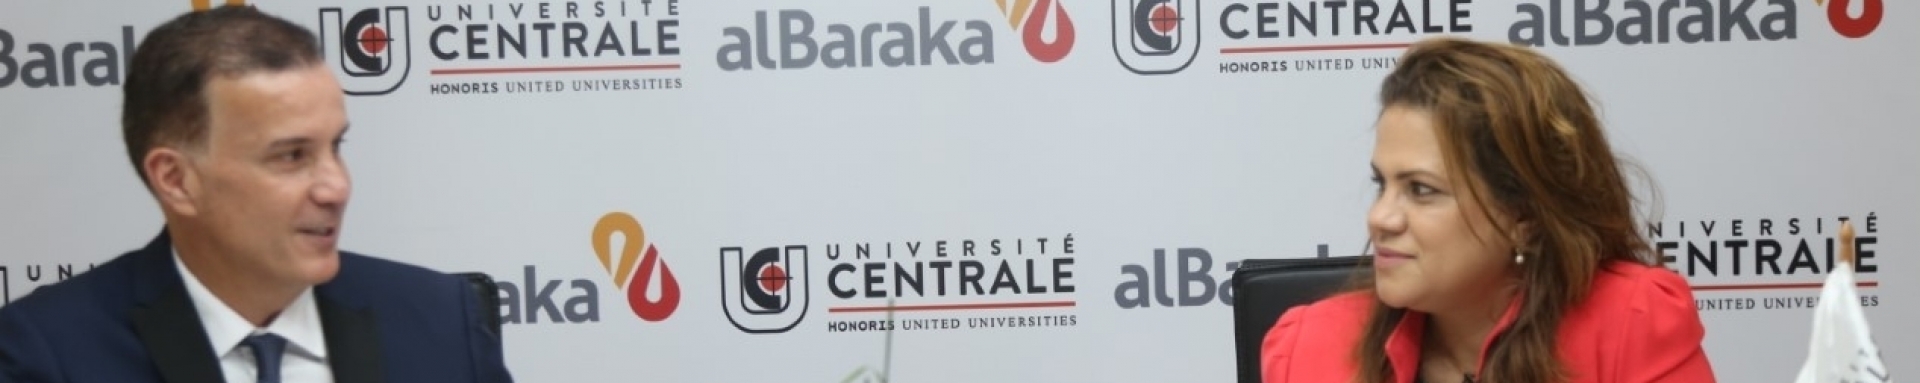 Al Baraka et l’Université Centrale s’unissent pour Offrir de nouvelles alternatives de financement en faveur des étudiants